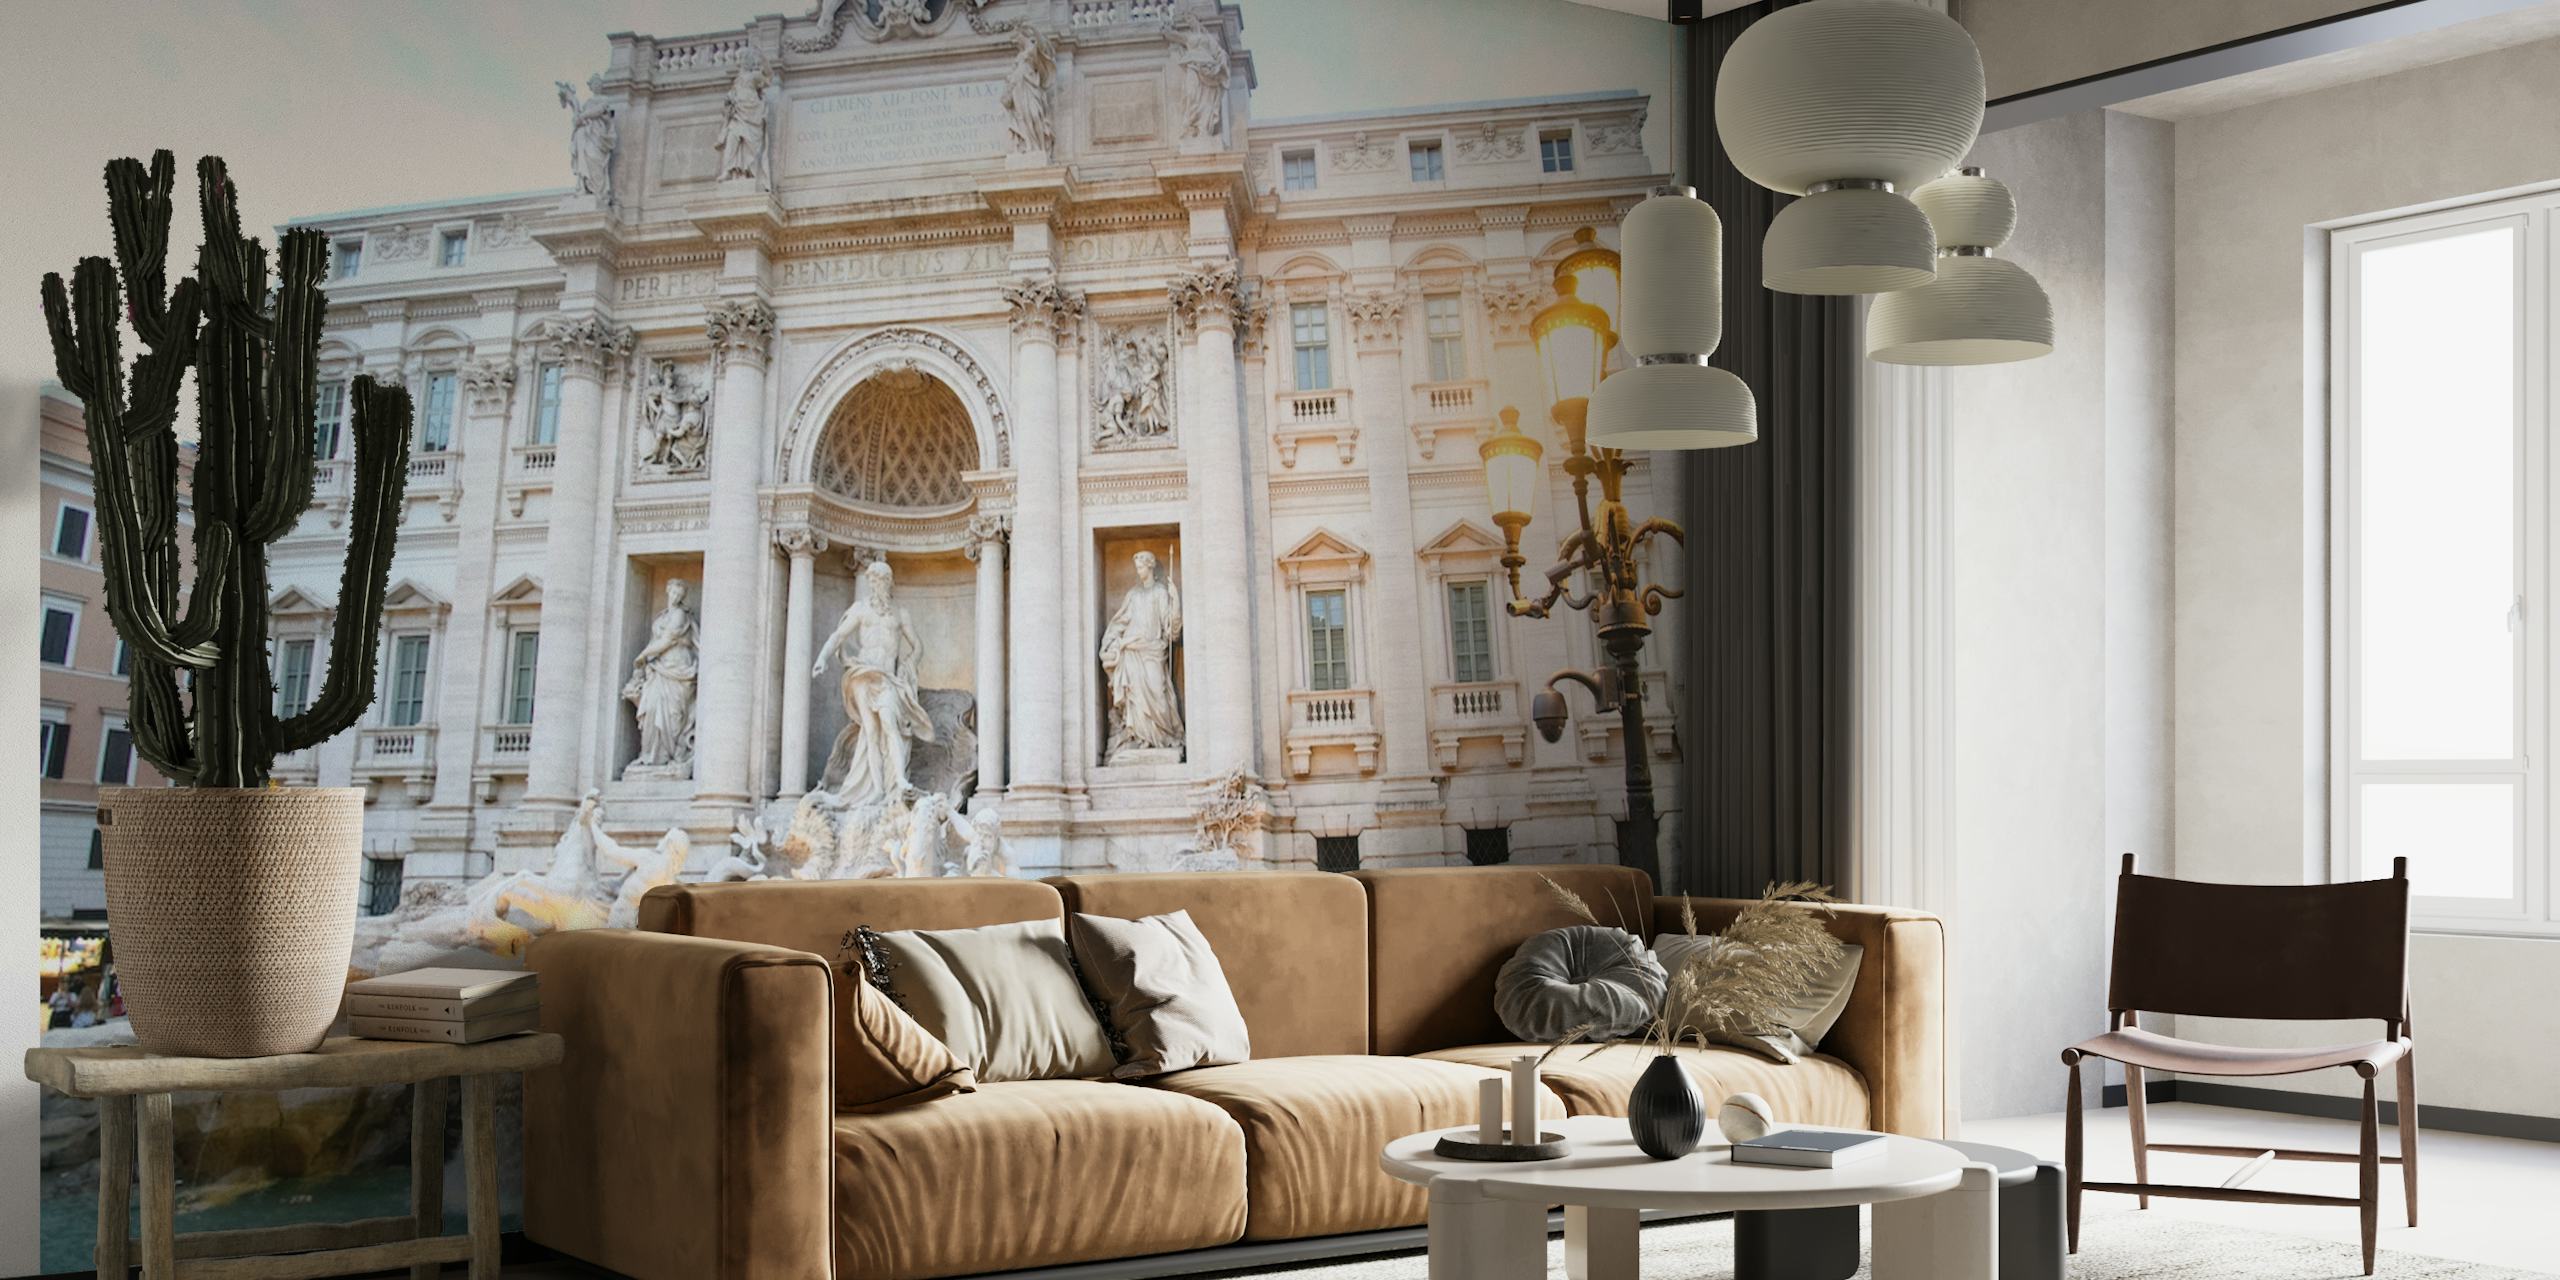 Trevin suihkulähde Roomassa seinämaalaus, joka esittää koristeellista arkkitehtuuria ja veistoksia